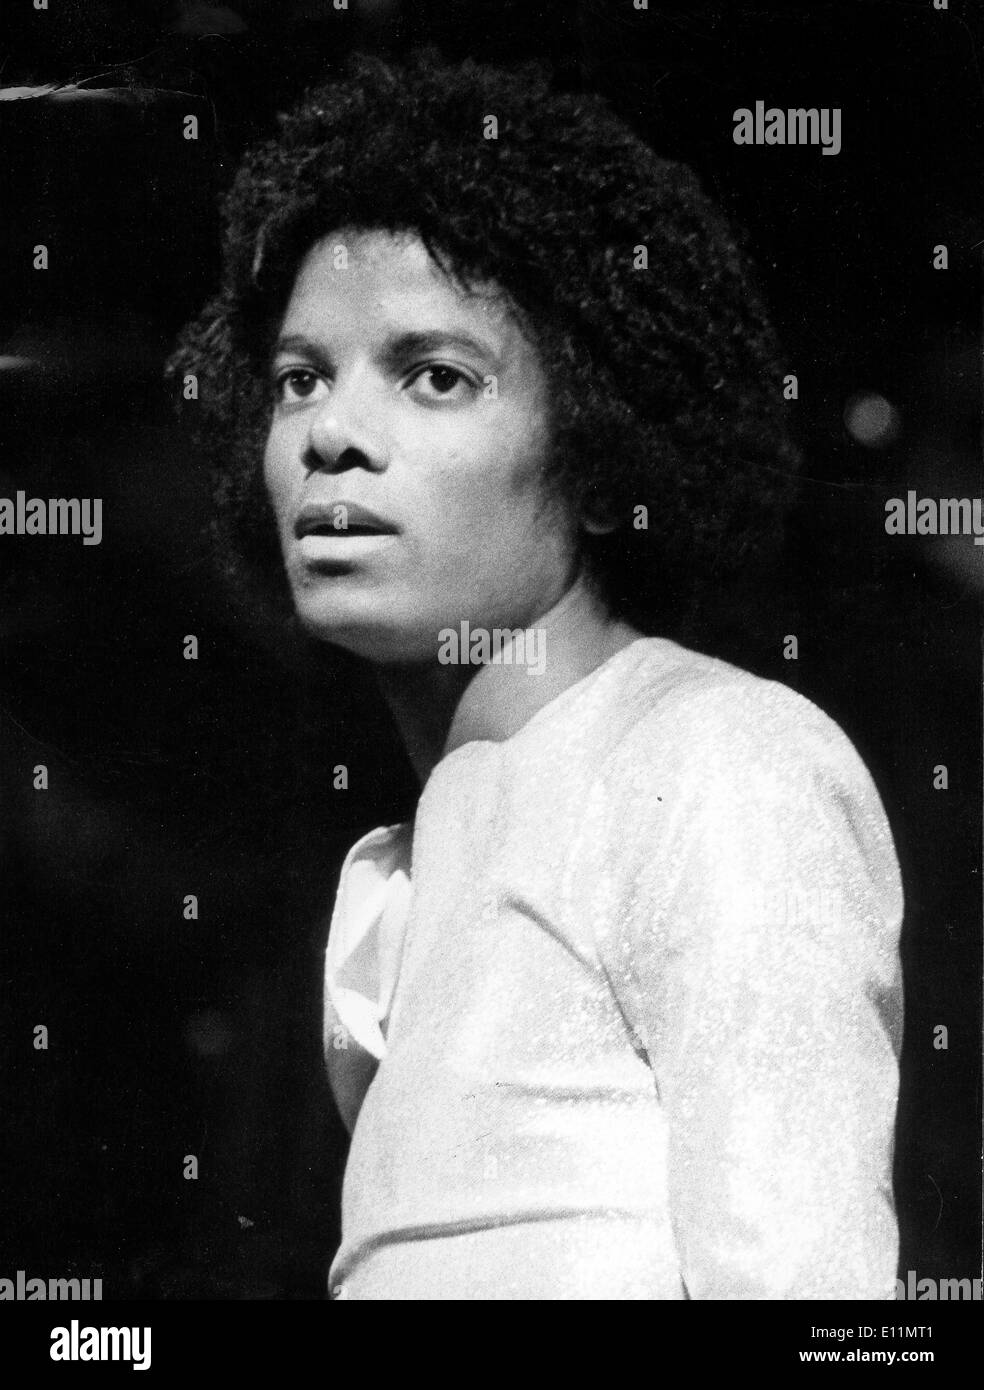 Michael Jackson avant première Jackson 5 concert Banque D'Images